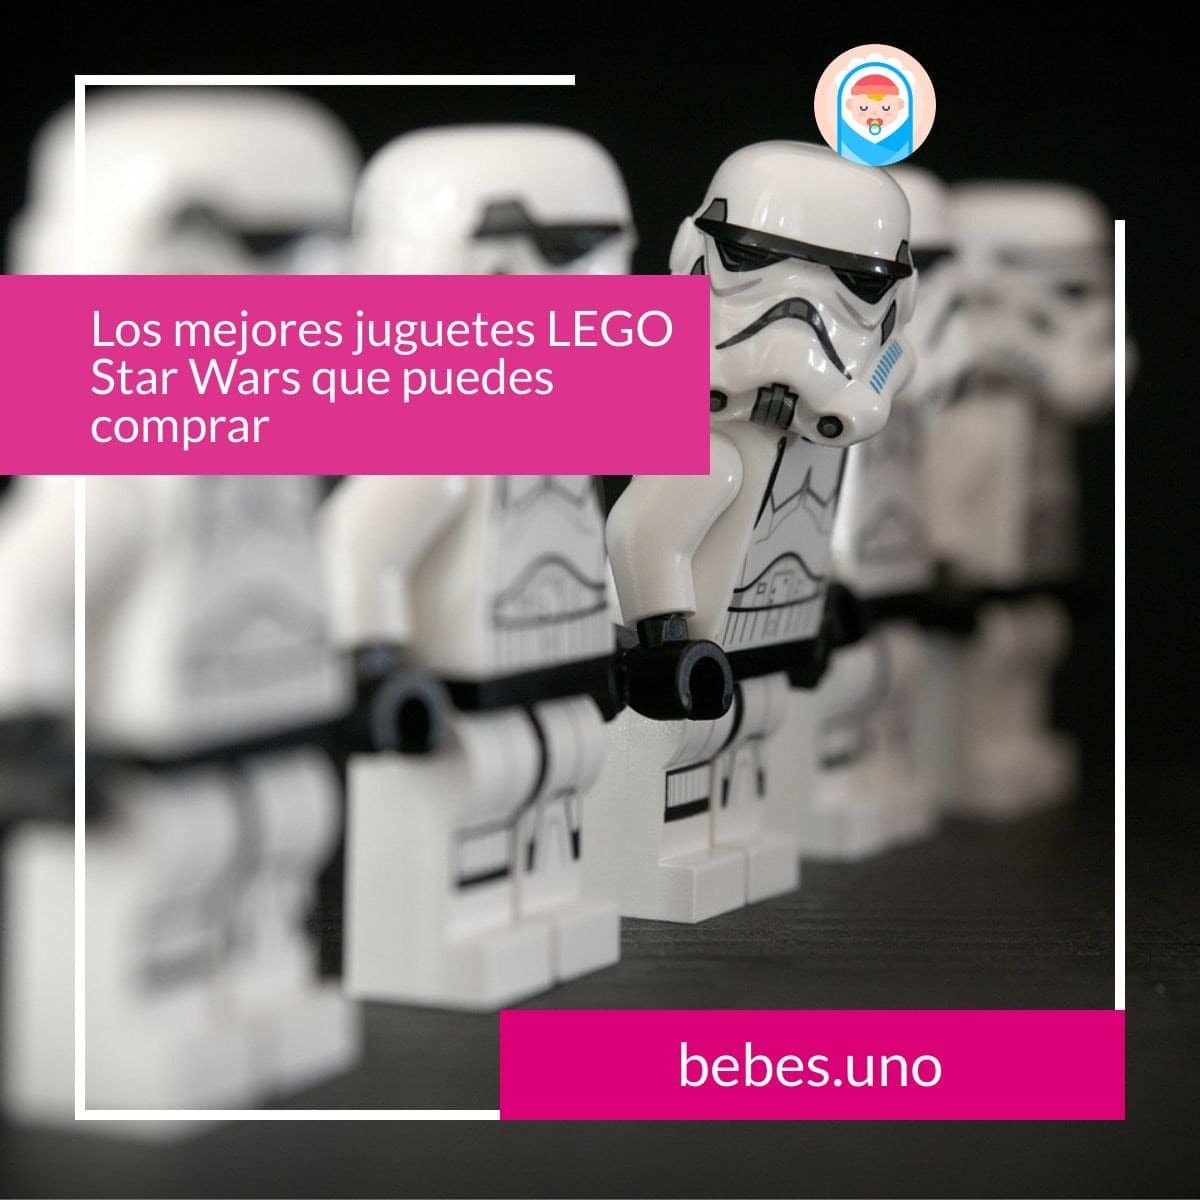 Los mejores juguetes LEGO Star Wars que puedes comprar